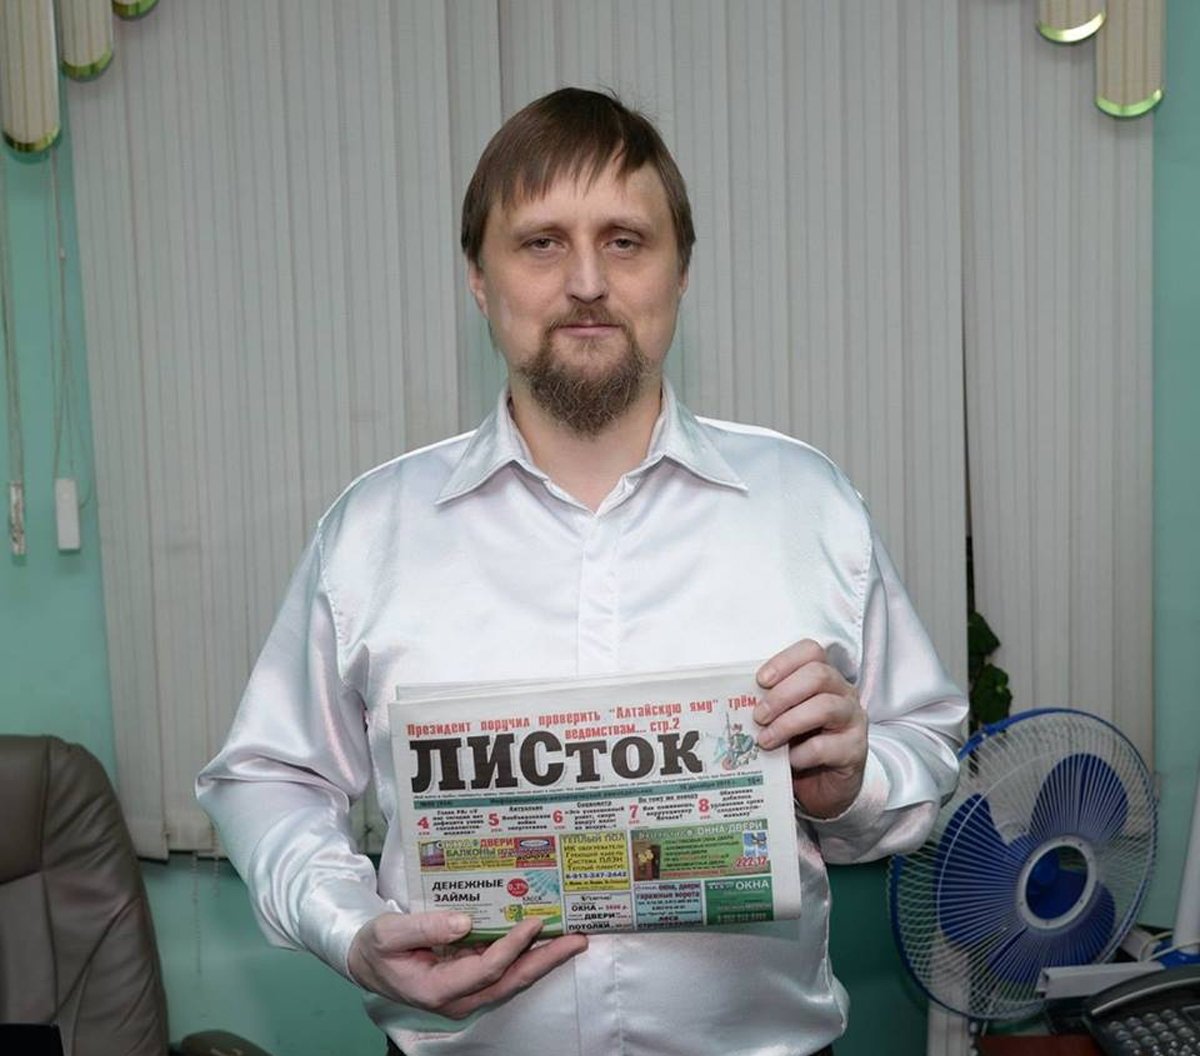 Сергей Михайлов. Фото из его профиля ВКонтакте